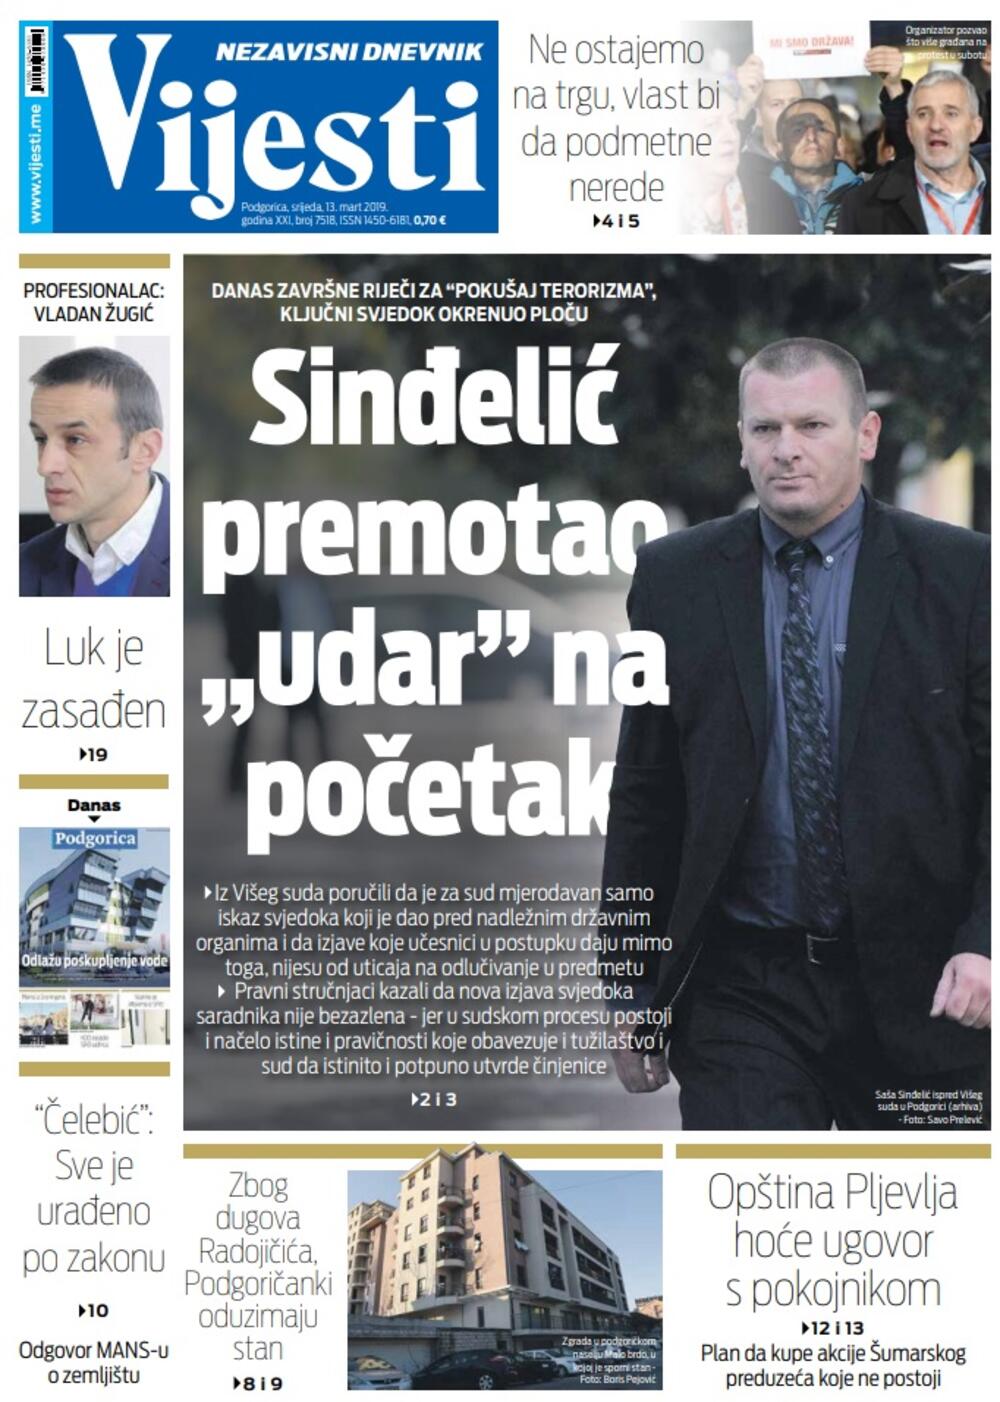 Naslovna strana "Vijesti" za  13. mart, Foto: Vijesti